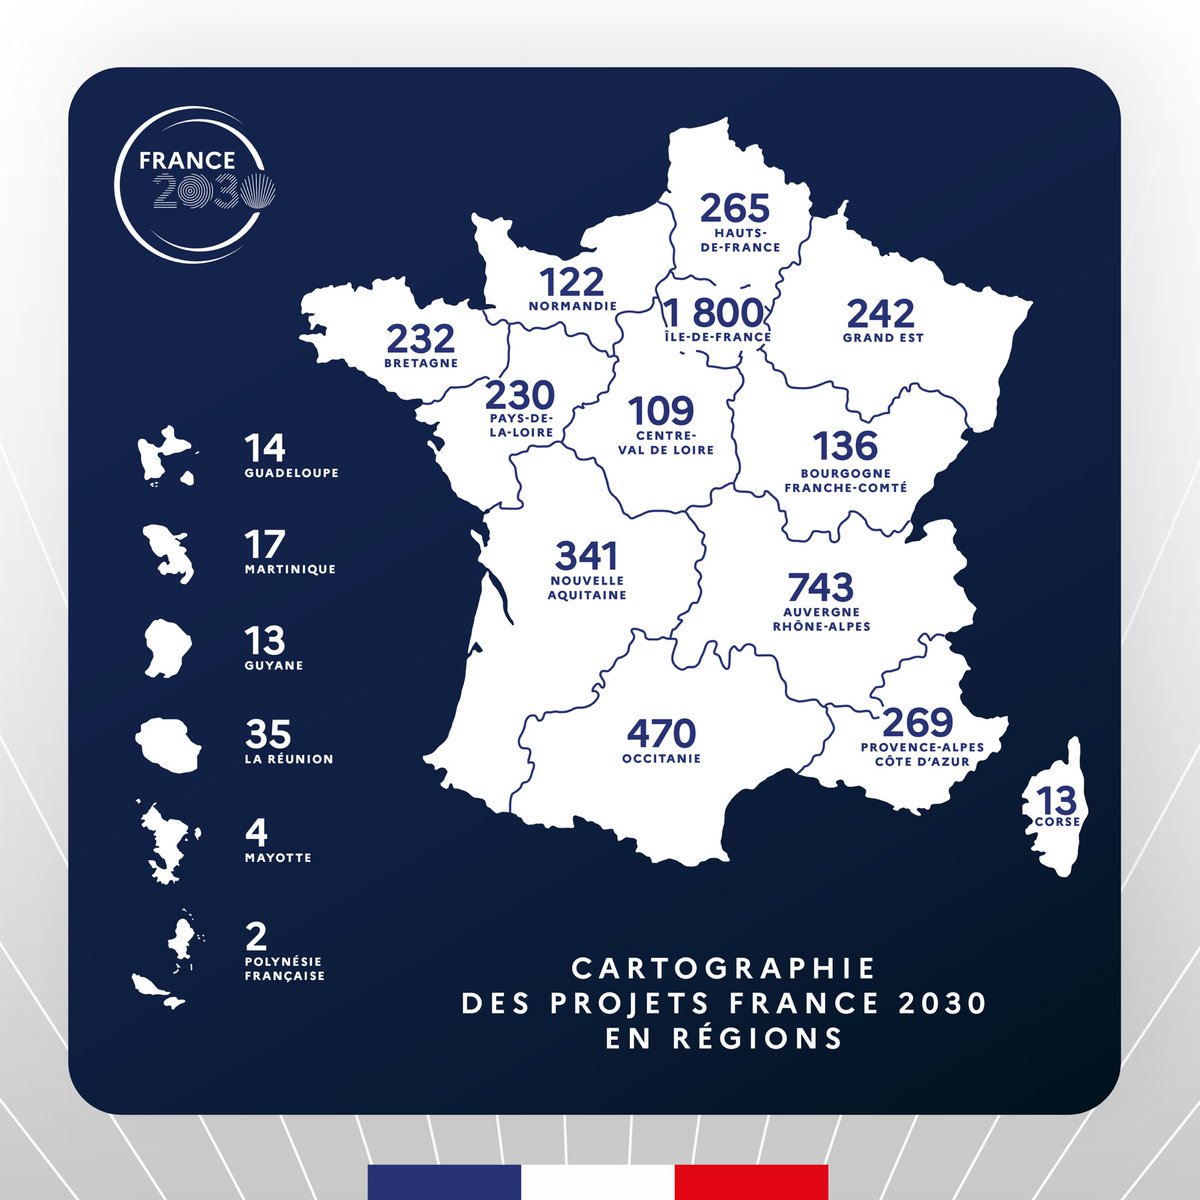 3 200 projets ont déjà été soutenus par France 2030, partout en France. 

Ce sont autant de recherches qui avancent et de technologies qui se développent. Et des milliers d’emplois qui se créent !